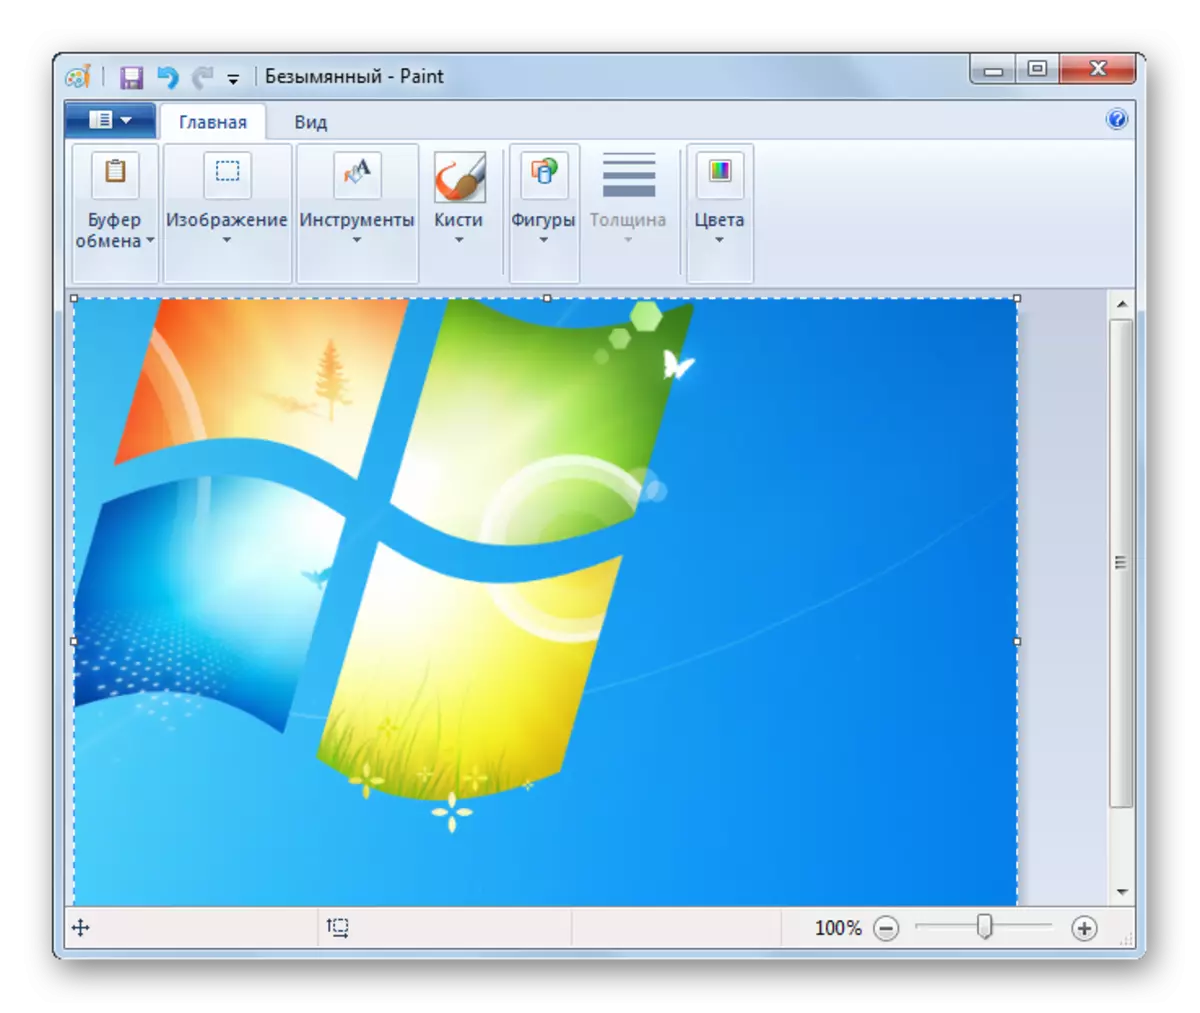 Снимка в стандартната програма за боя в Windows 7